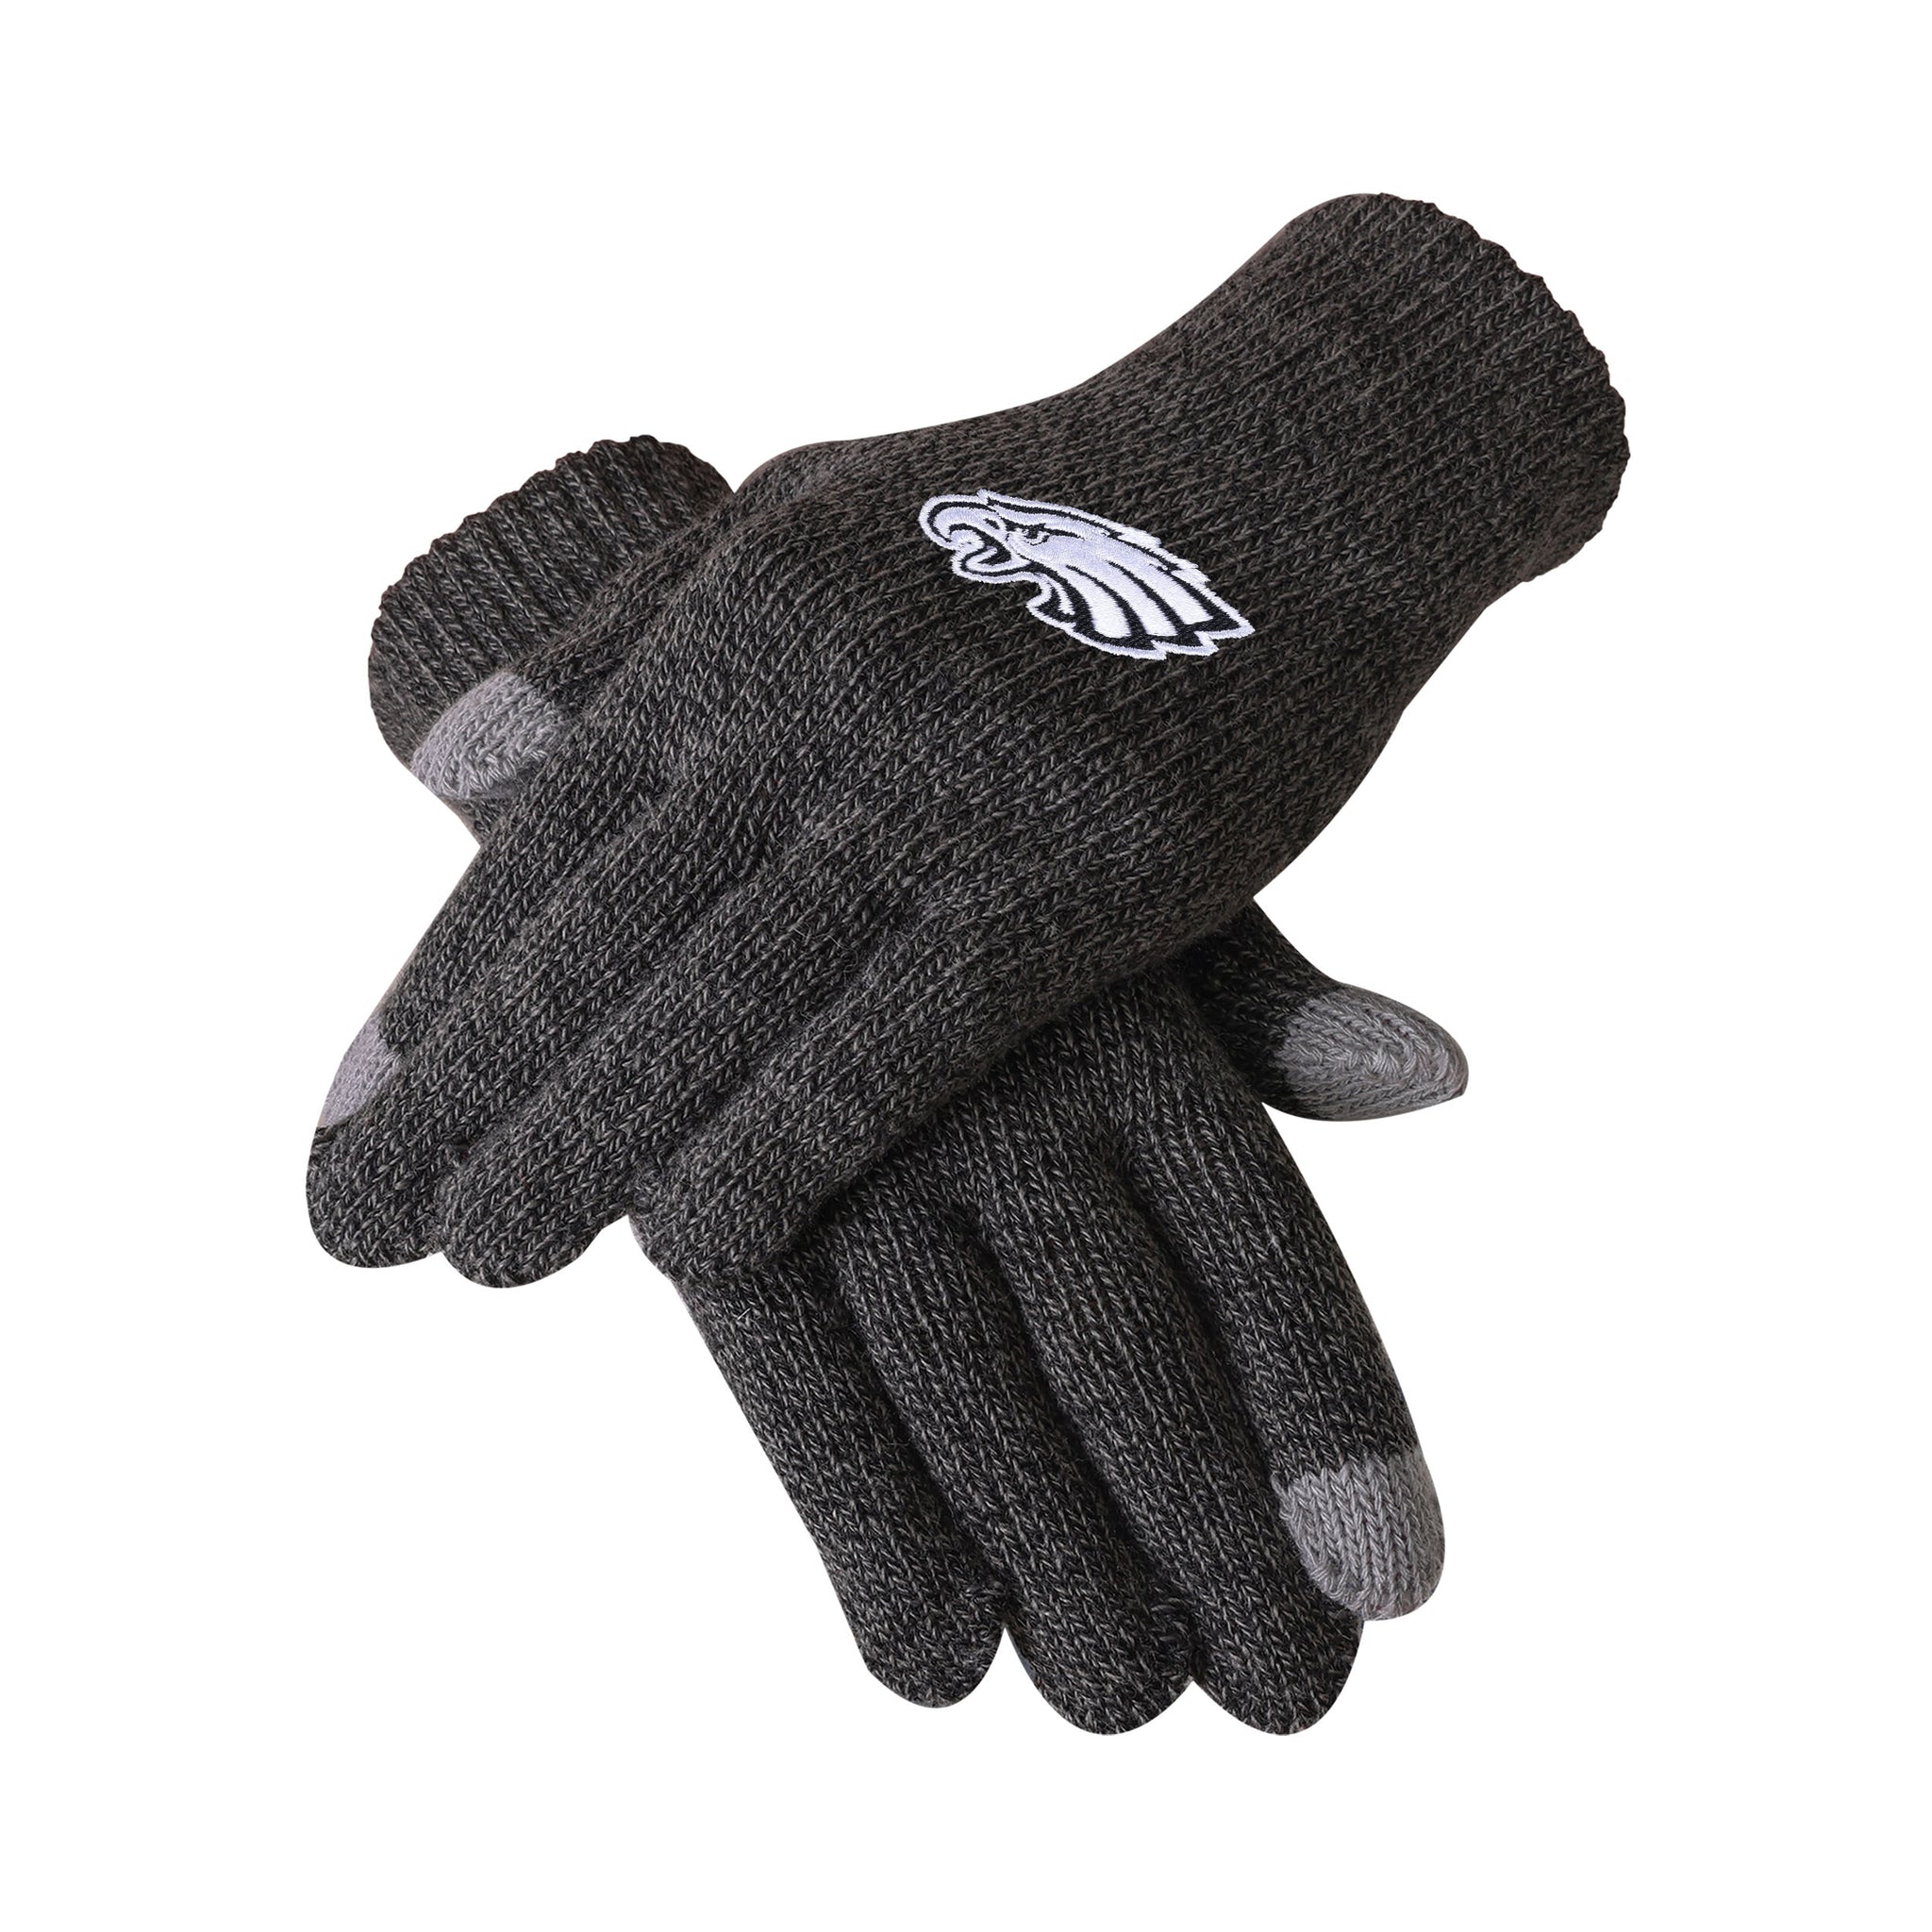 Eagles gloves